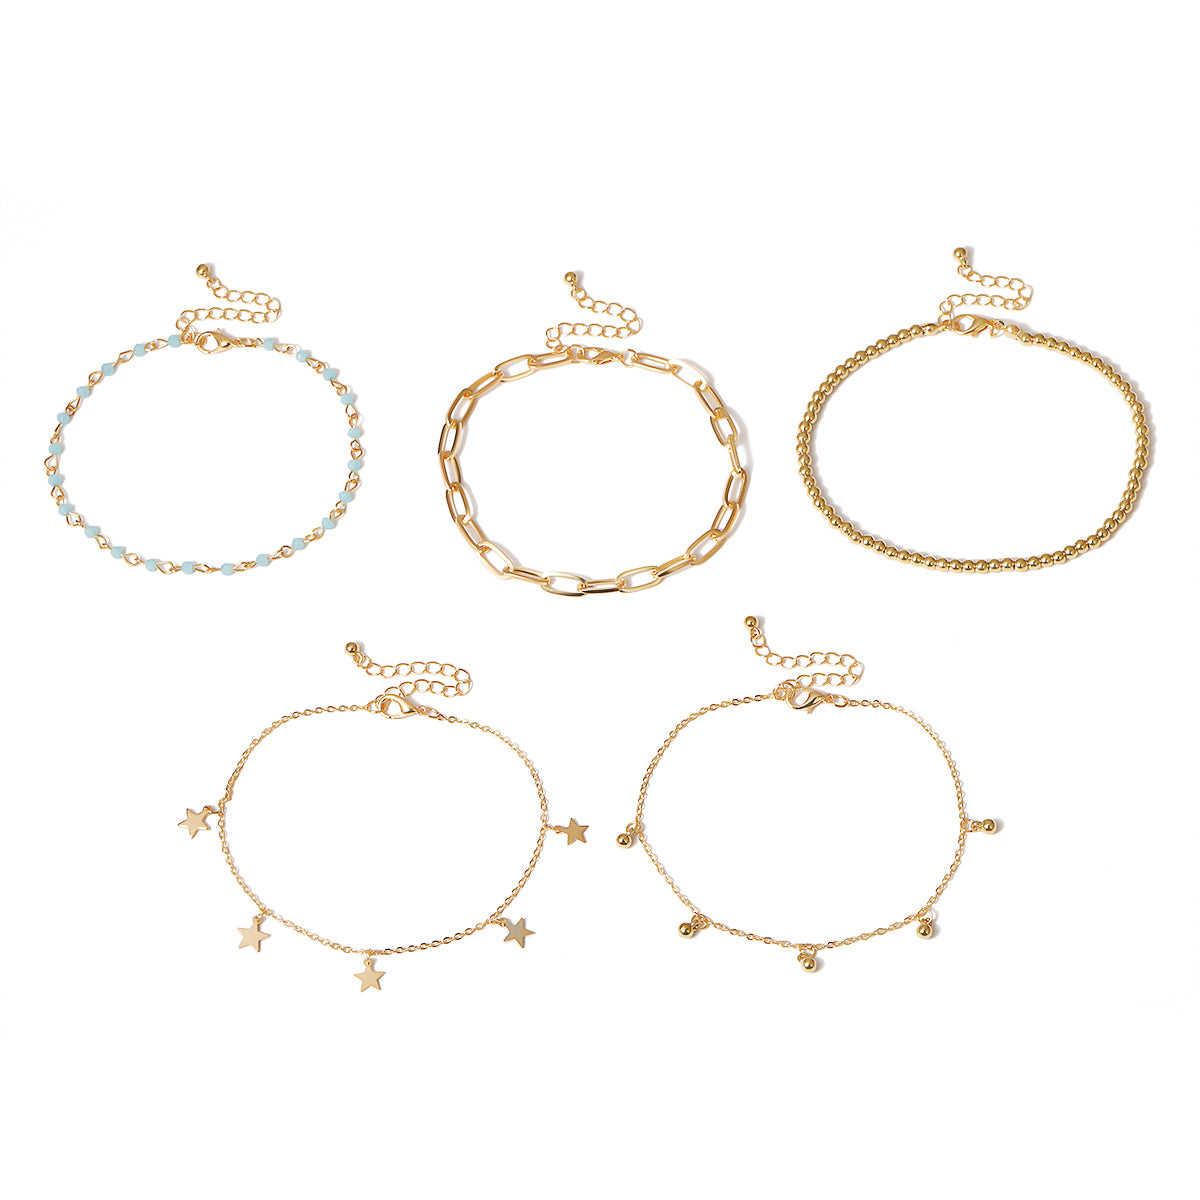 Damen Trendy 5er Set Fußkette gold mit Anhänger & Perlen Schmuck einzel tragbar verstellbar längenverstellbar perlenkette perle